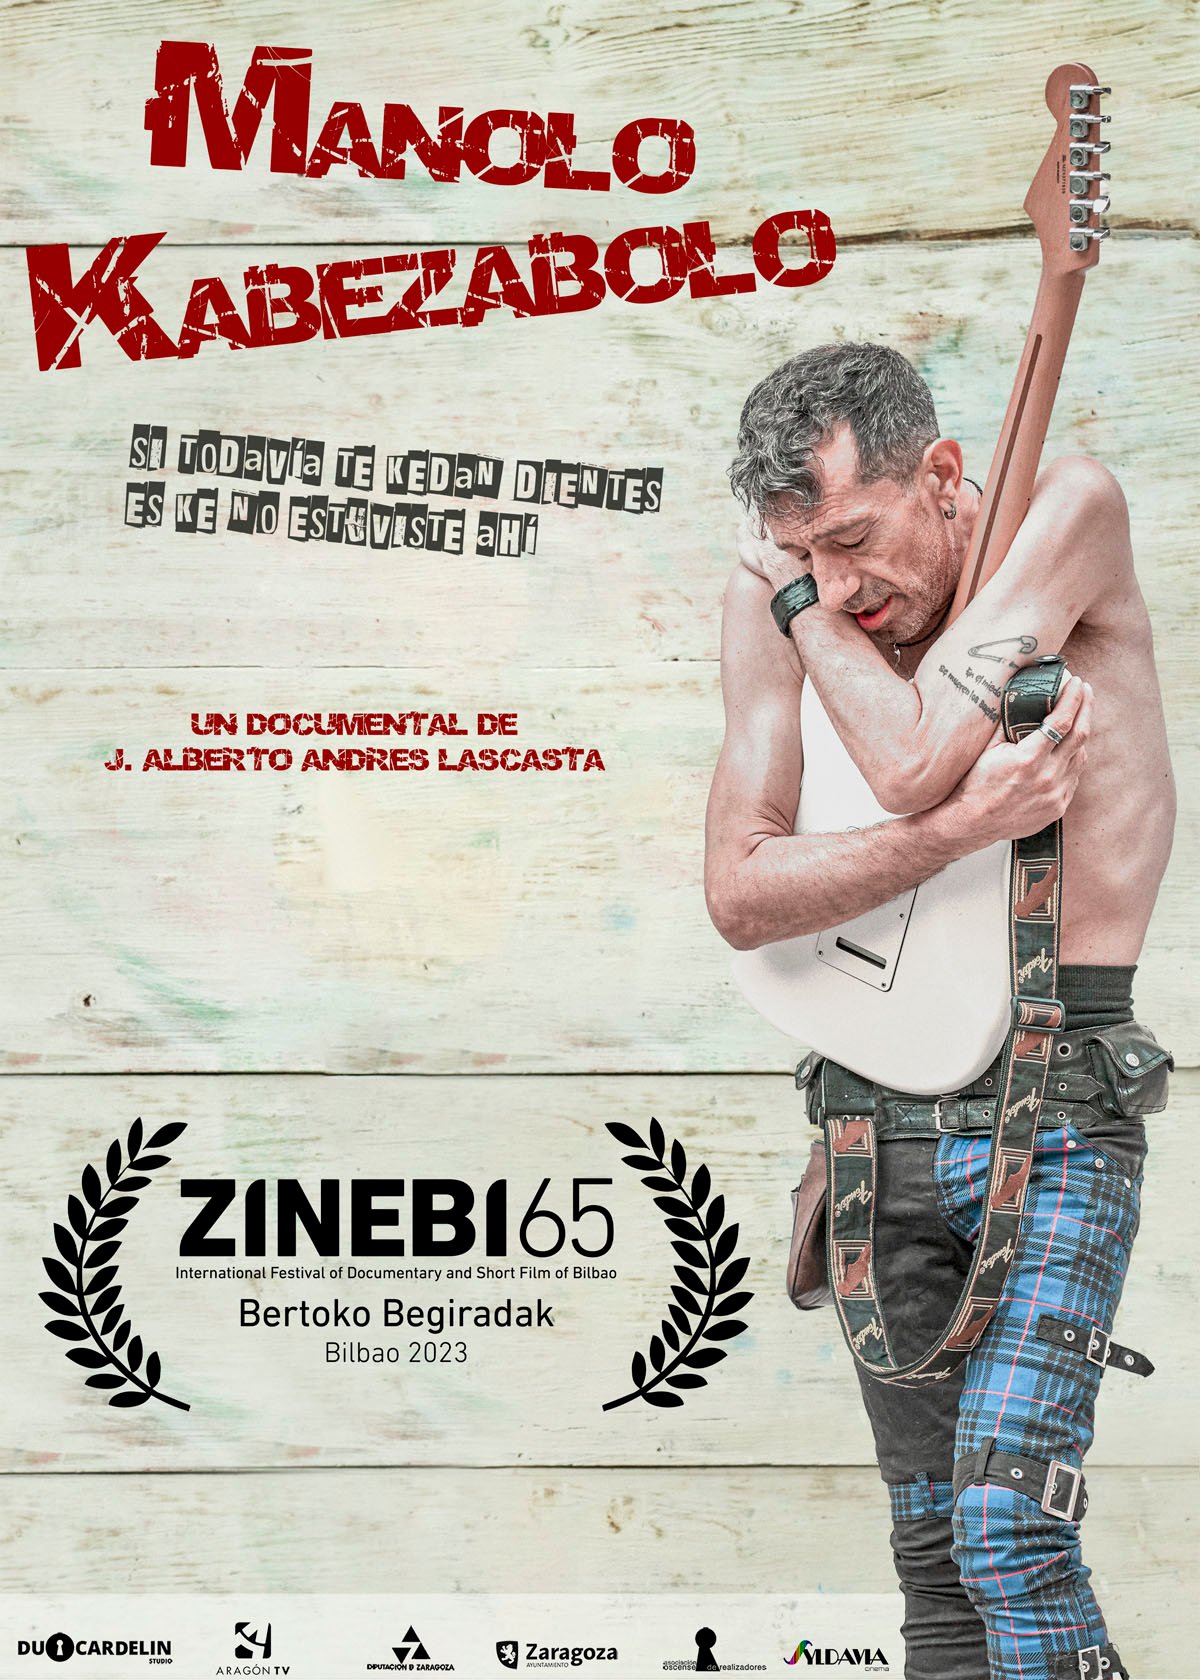 Ficha, tráiler y póster de Manolo Kabezabolo